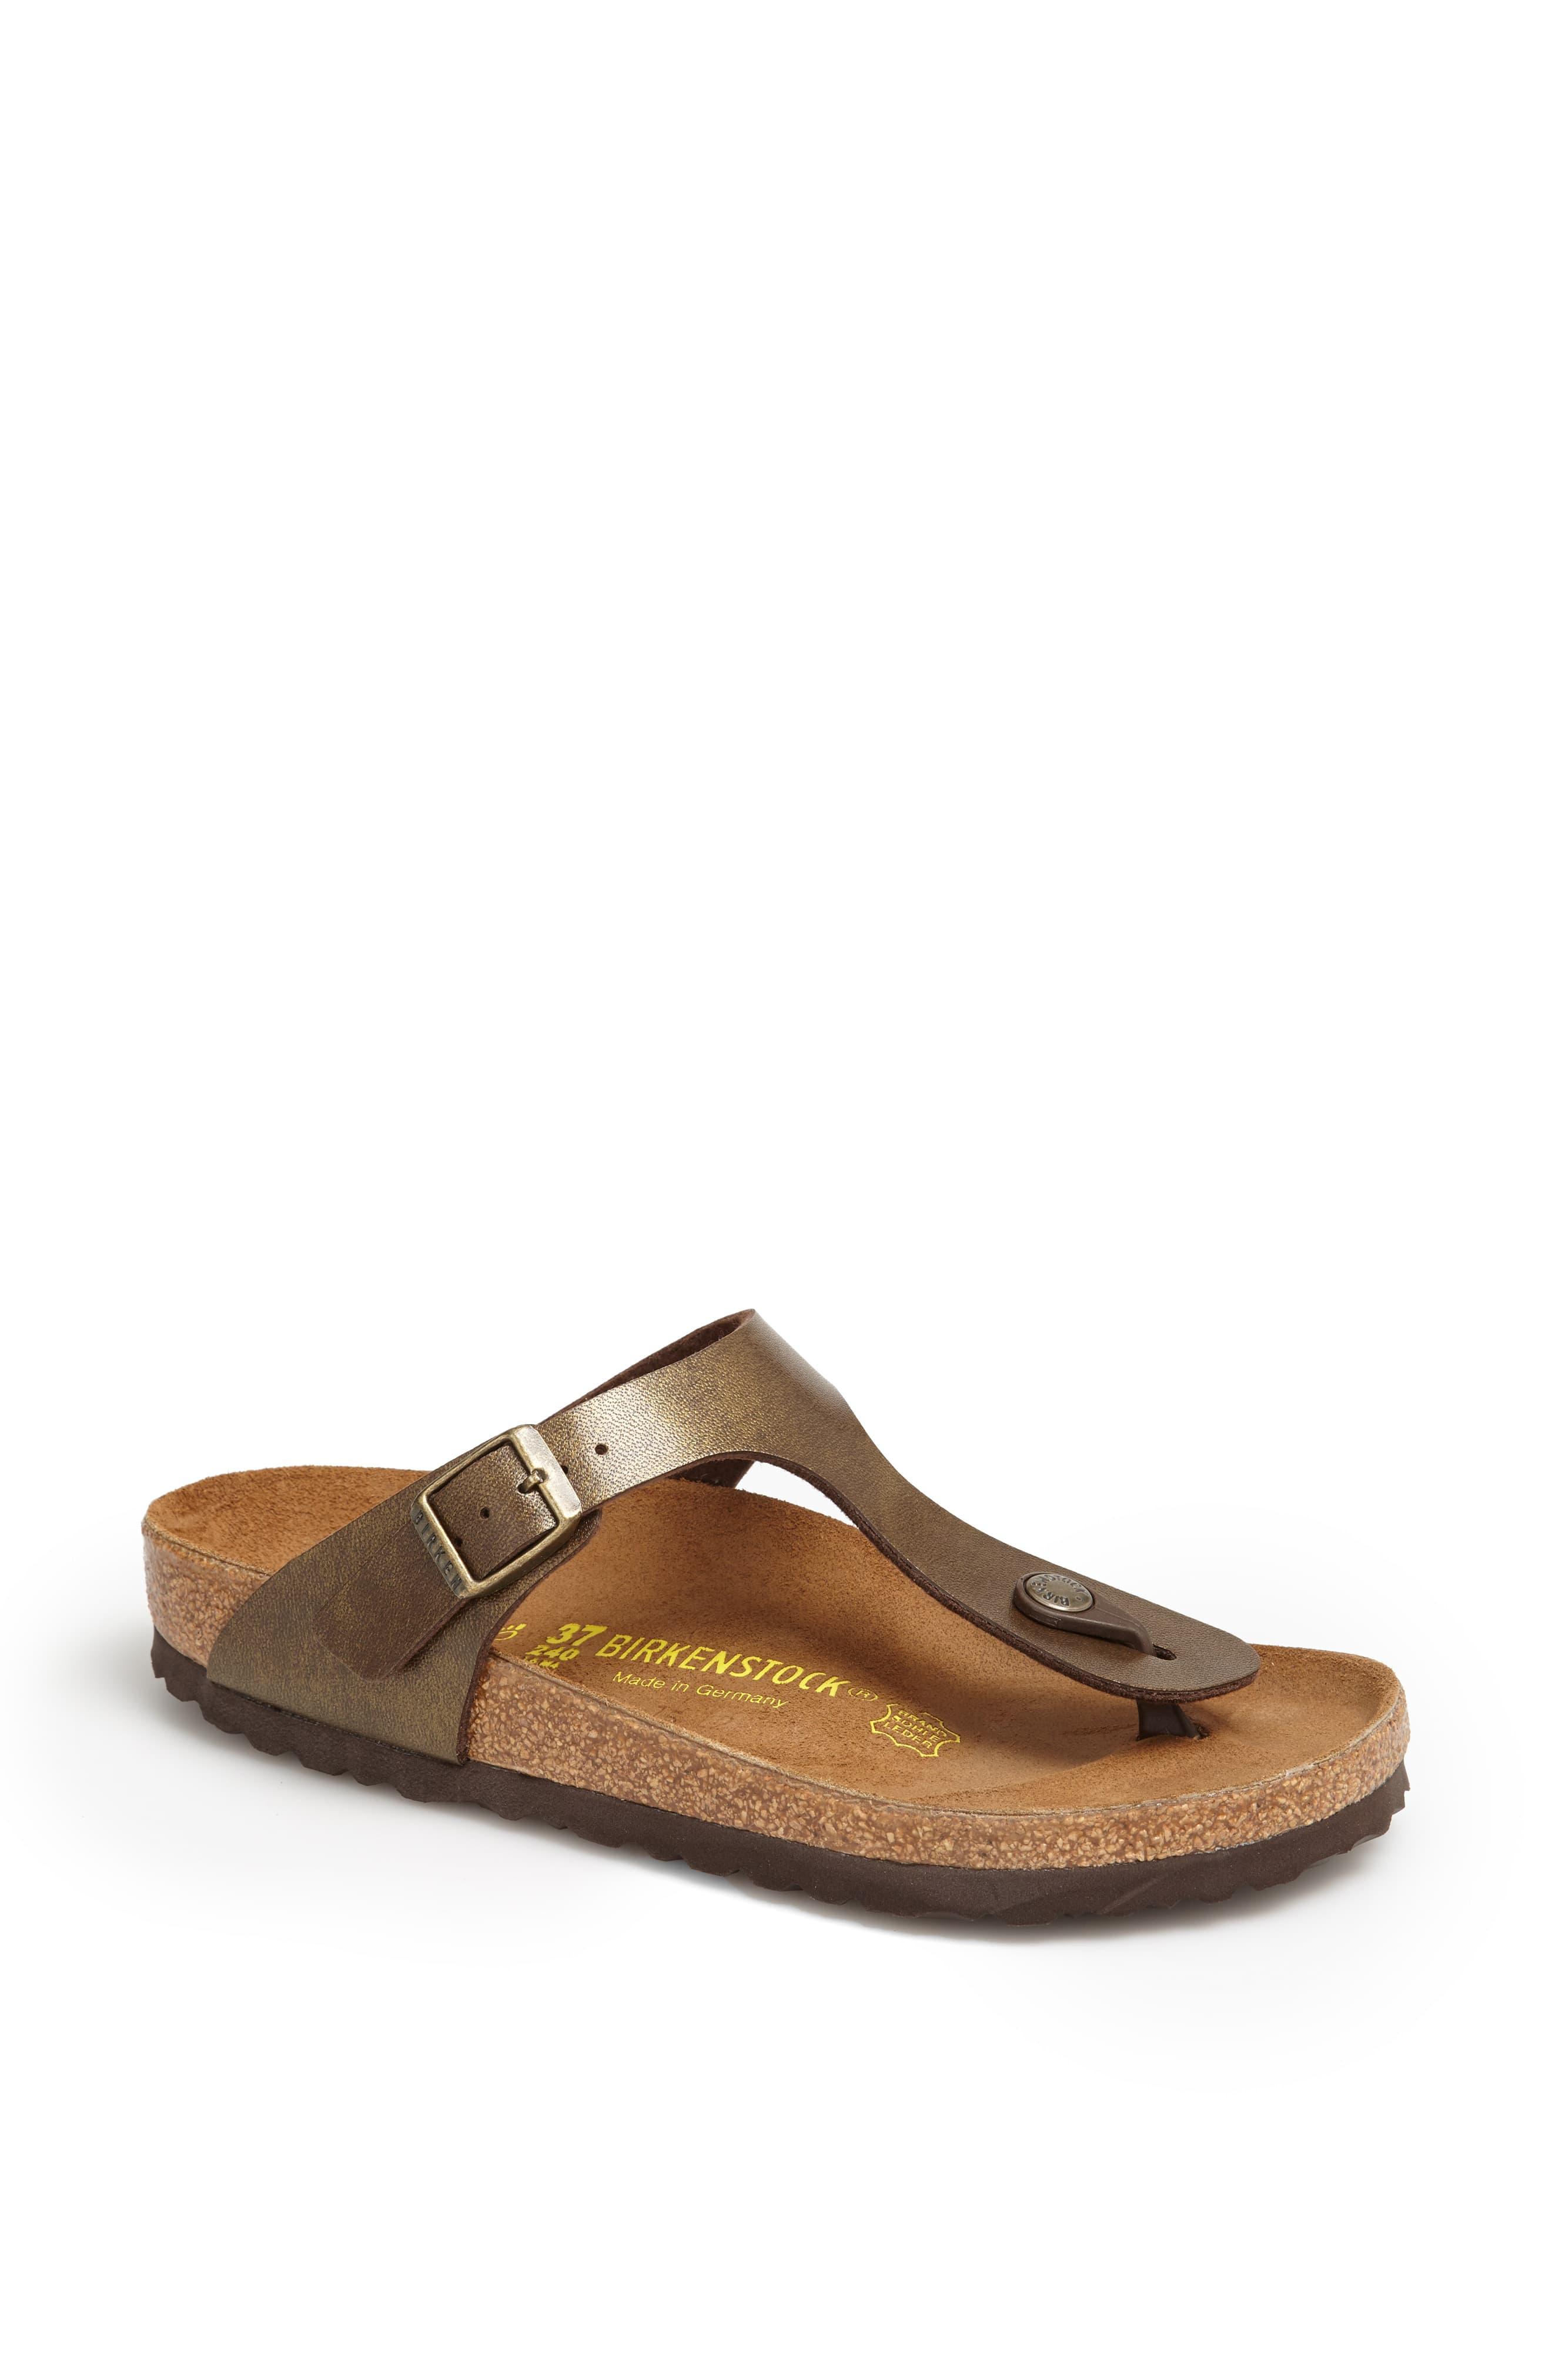 Birkenstock Leather Gizeh Birko-Flor Sandals in Brown Metallic ...